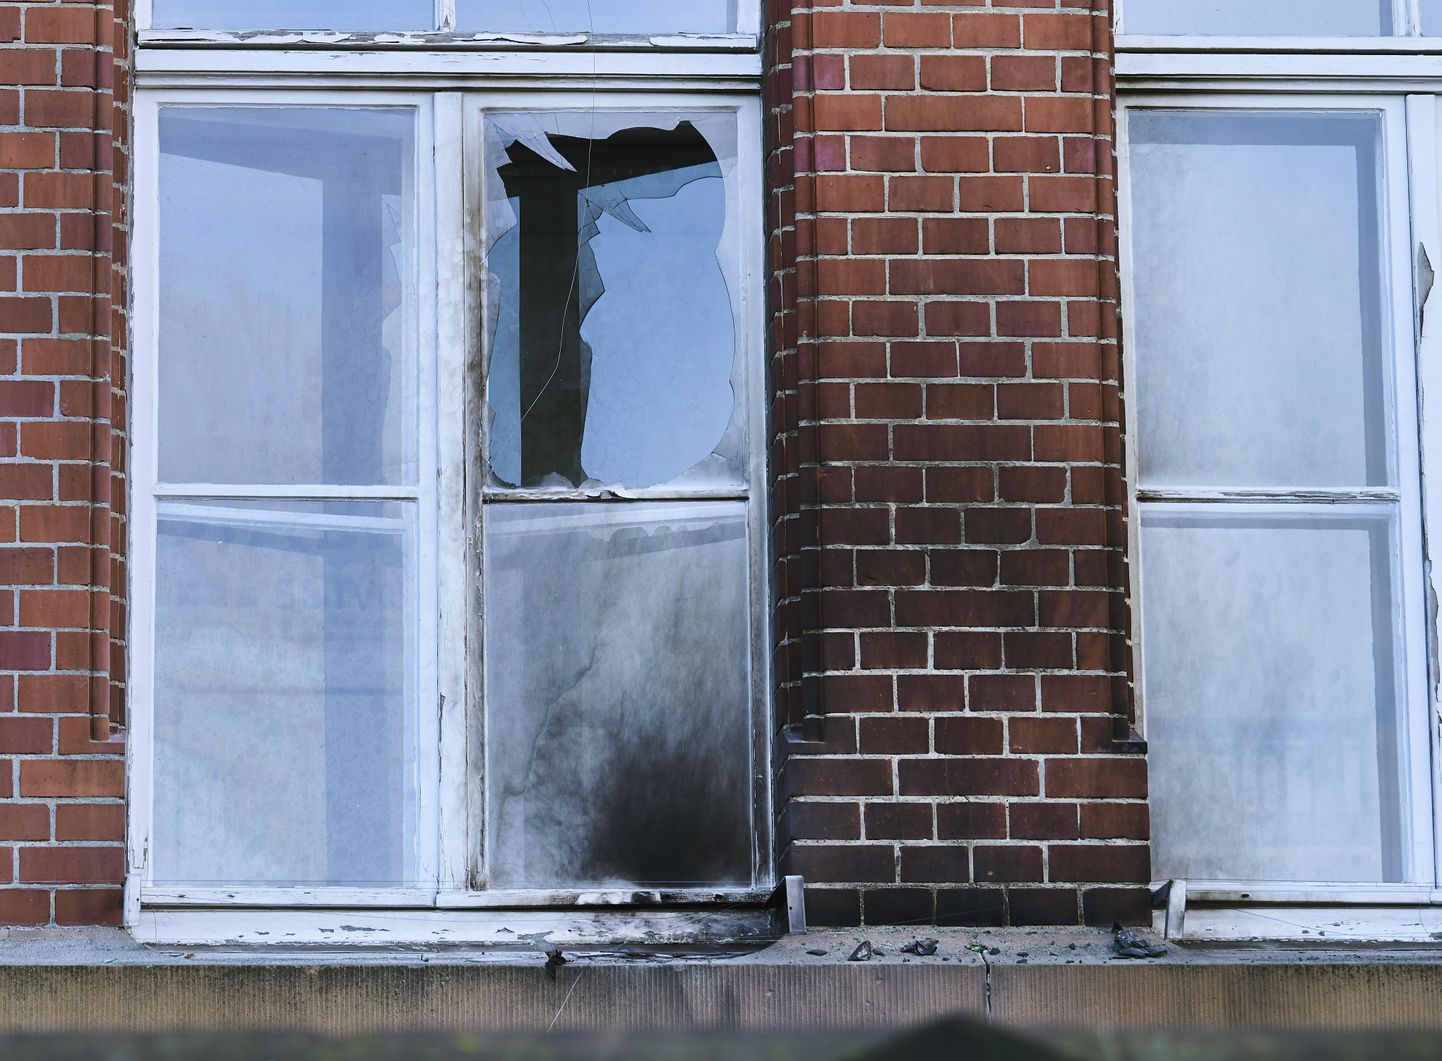 Robert Kochi instituudi kahjustada saanud fassaad ja aken.